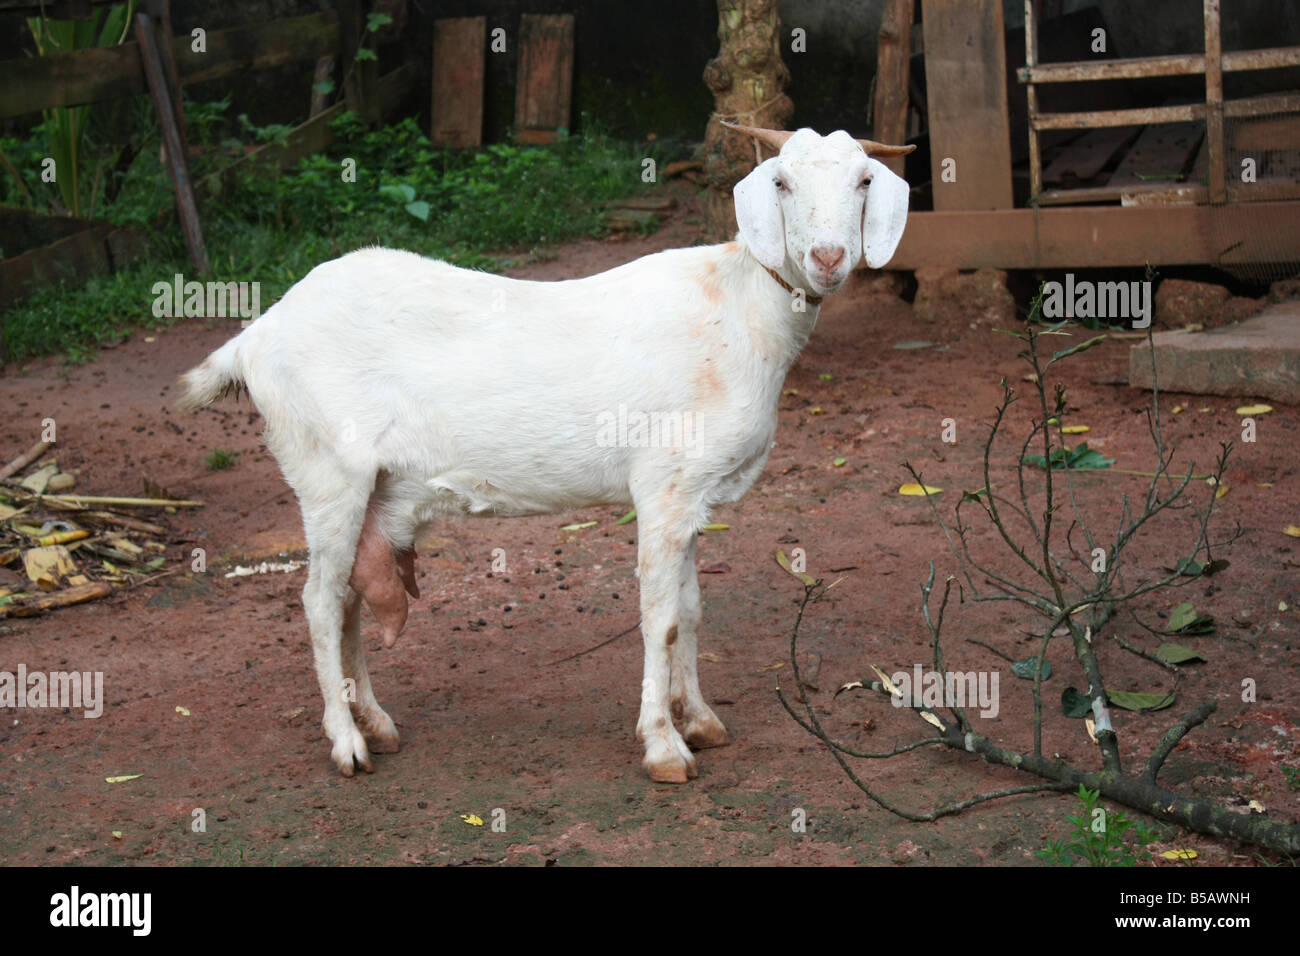 Una linda cabra blanca mirando directamente en frente de una perrera Foto de stock